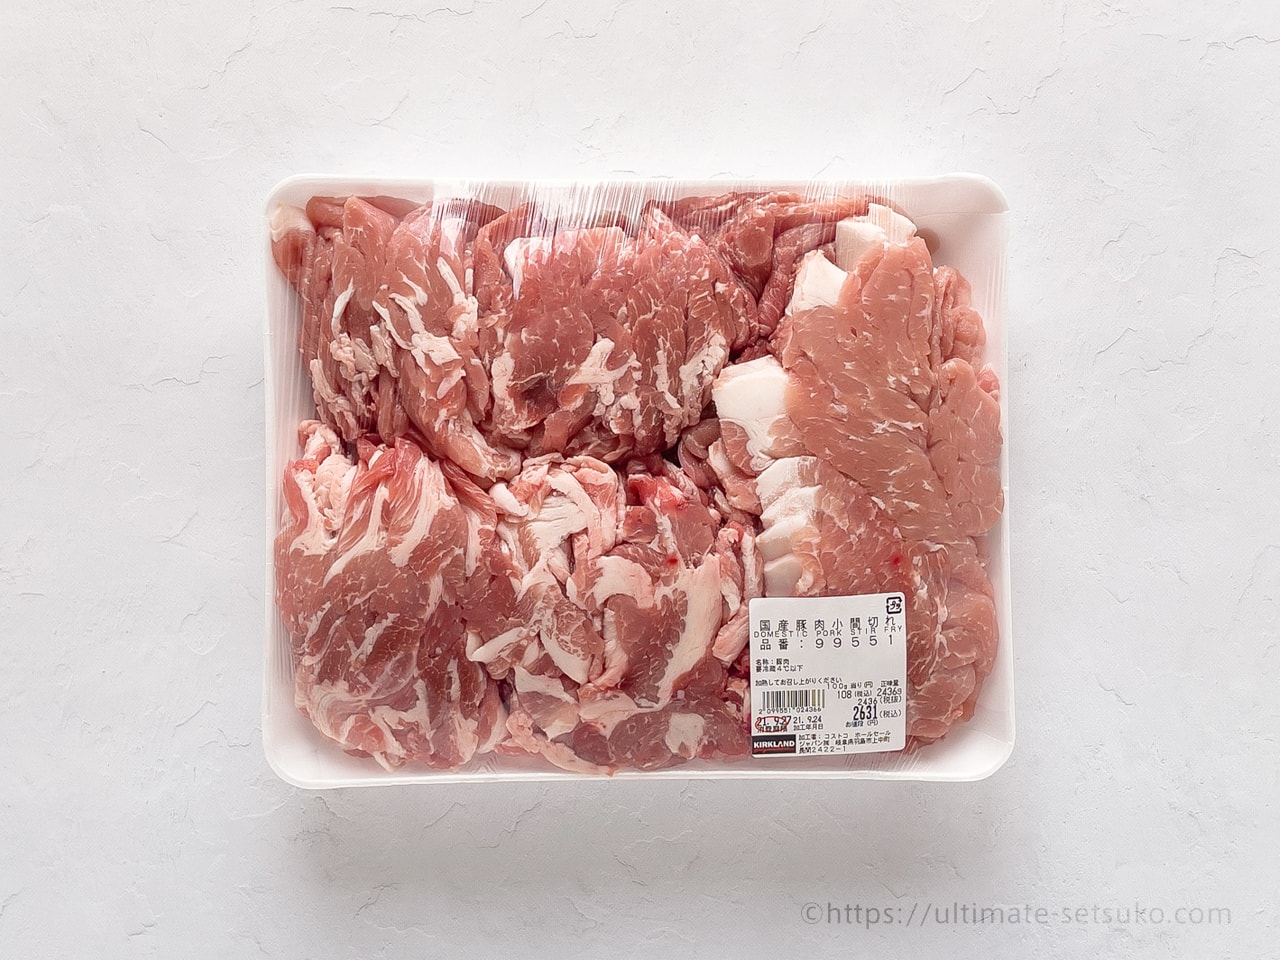 コストコの国産豚肉小間切れは2kg超えの特大ボリューム 値段やアレンジレシピの紹介